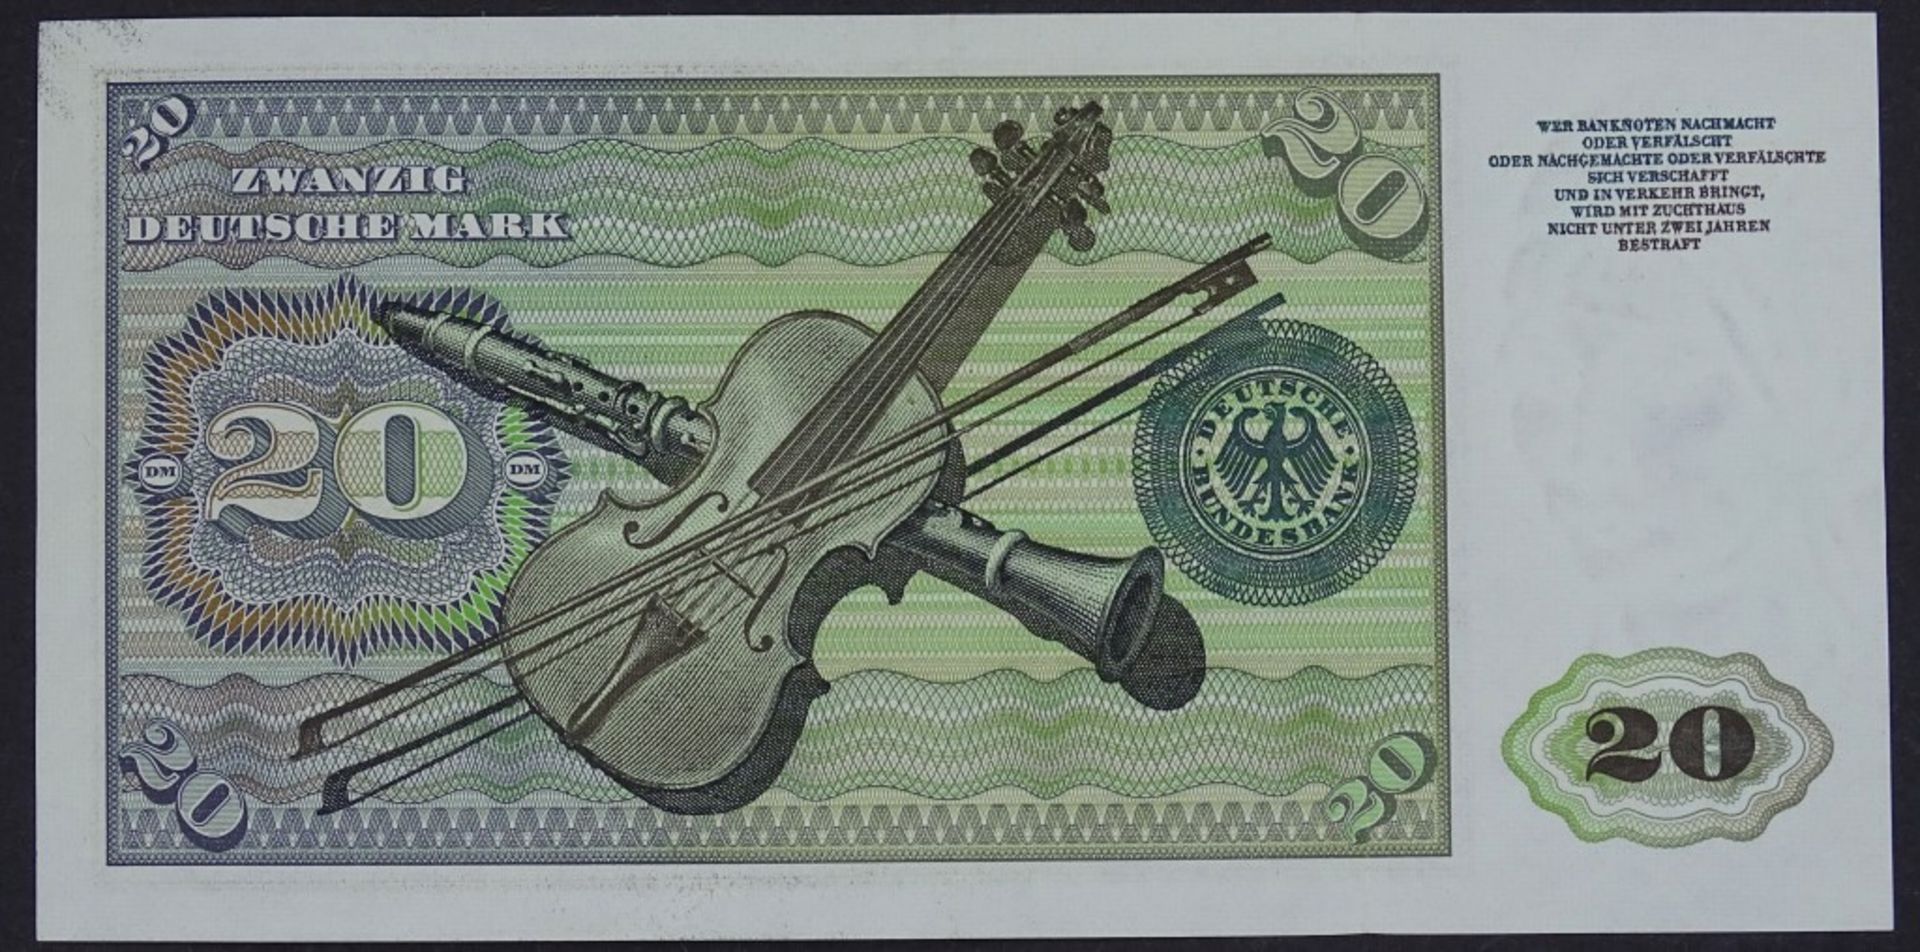 Banknote - 20 Deutsche Mark 1960- - -22.61 % buyer's premium on the hammer priceVAT margin scheme, - Bild 2 aus 2